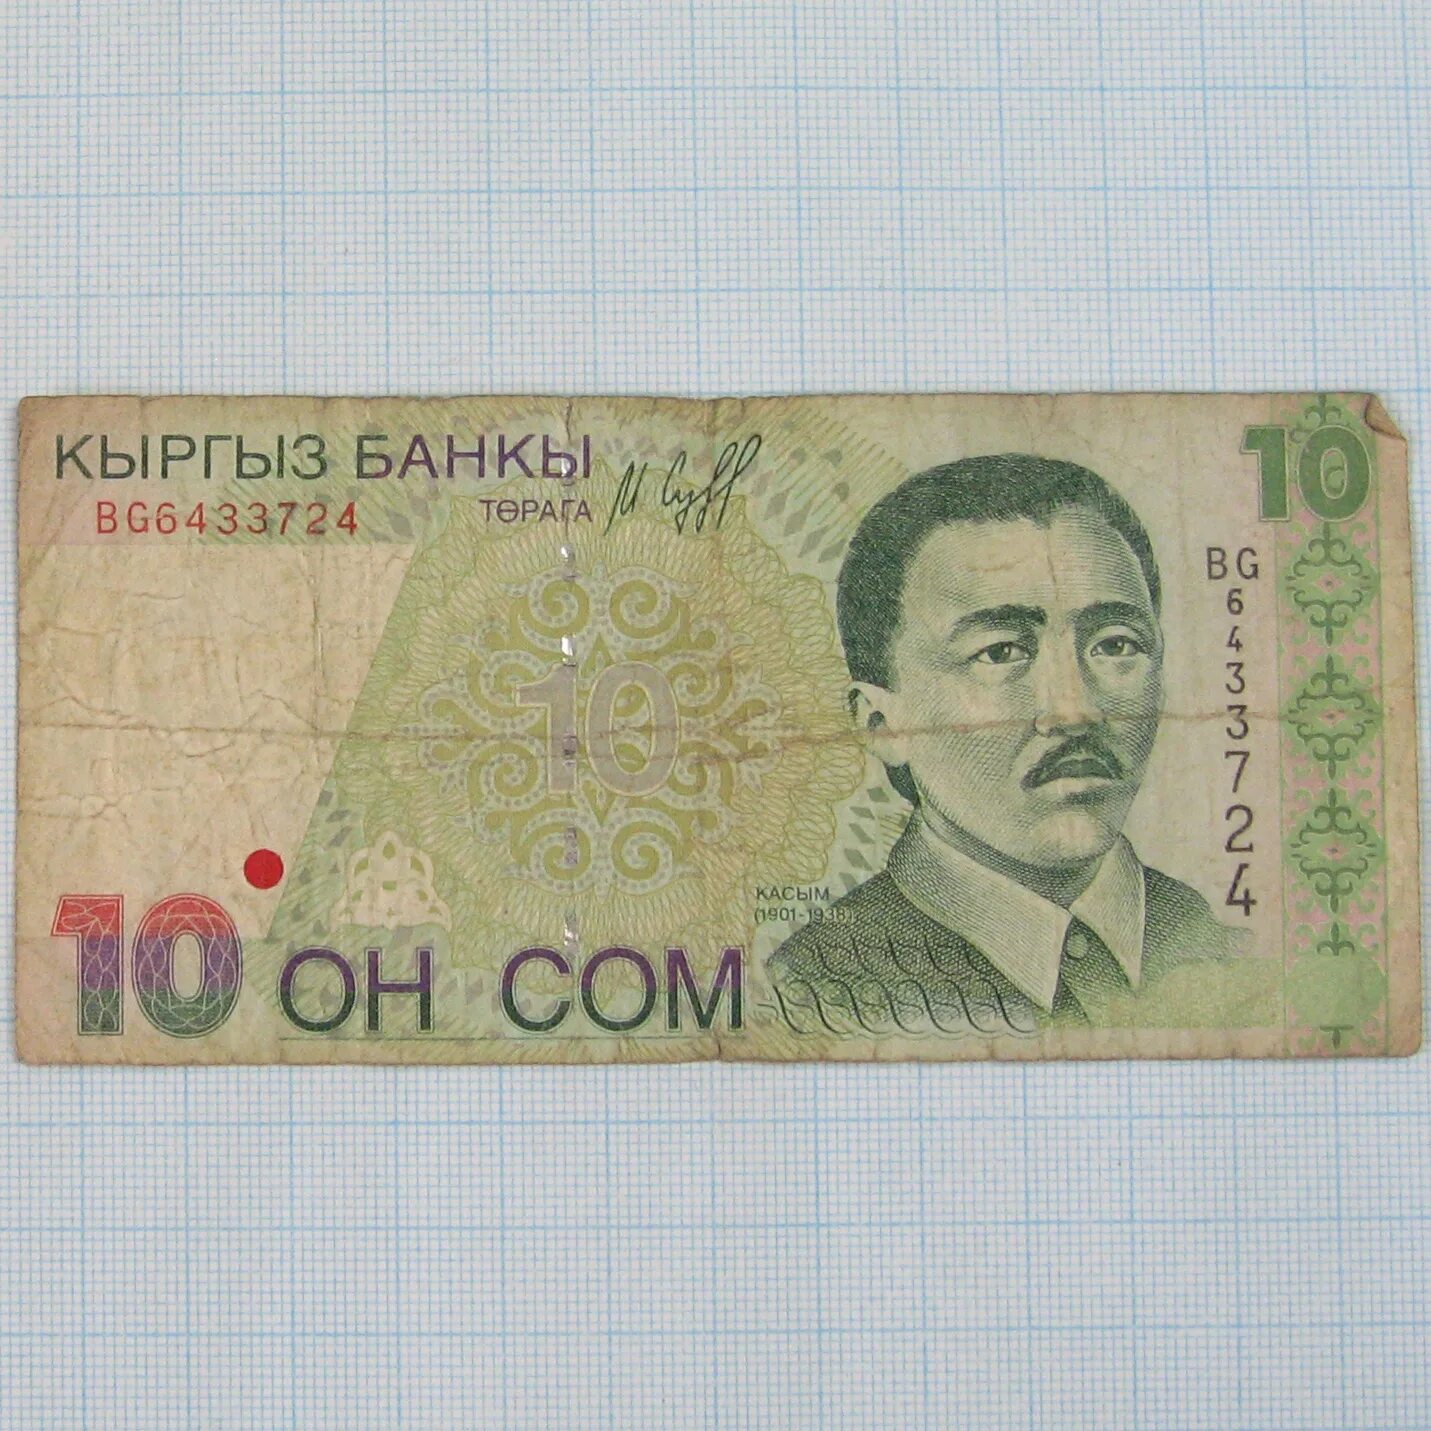 10 Сом. Киргизский сом. 10 Сом Кыргызстан. 5000 Сом Киргизия. Купить киргизский сом